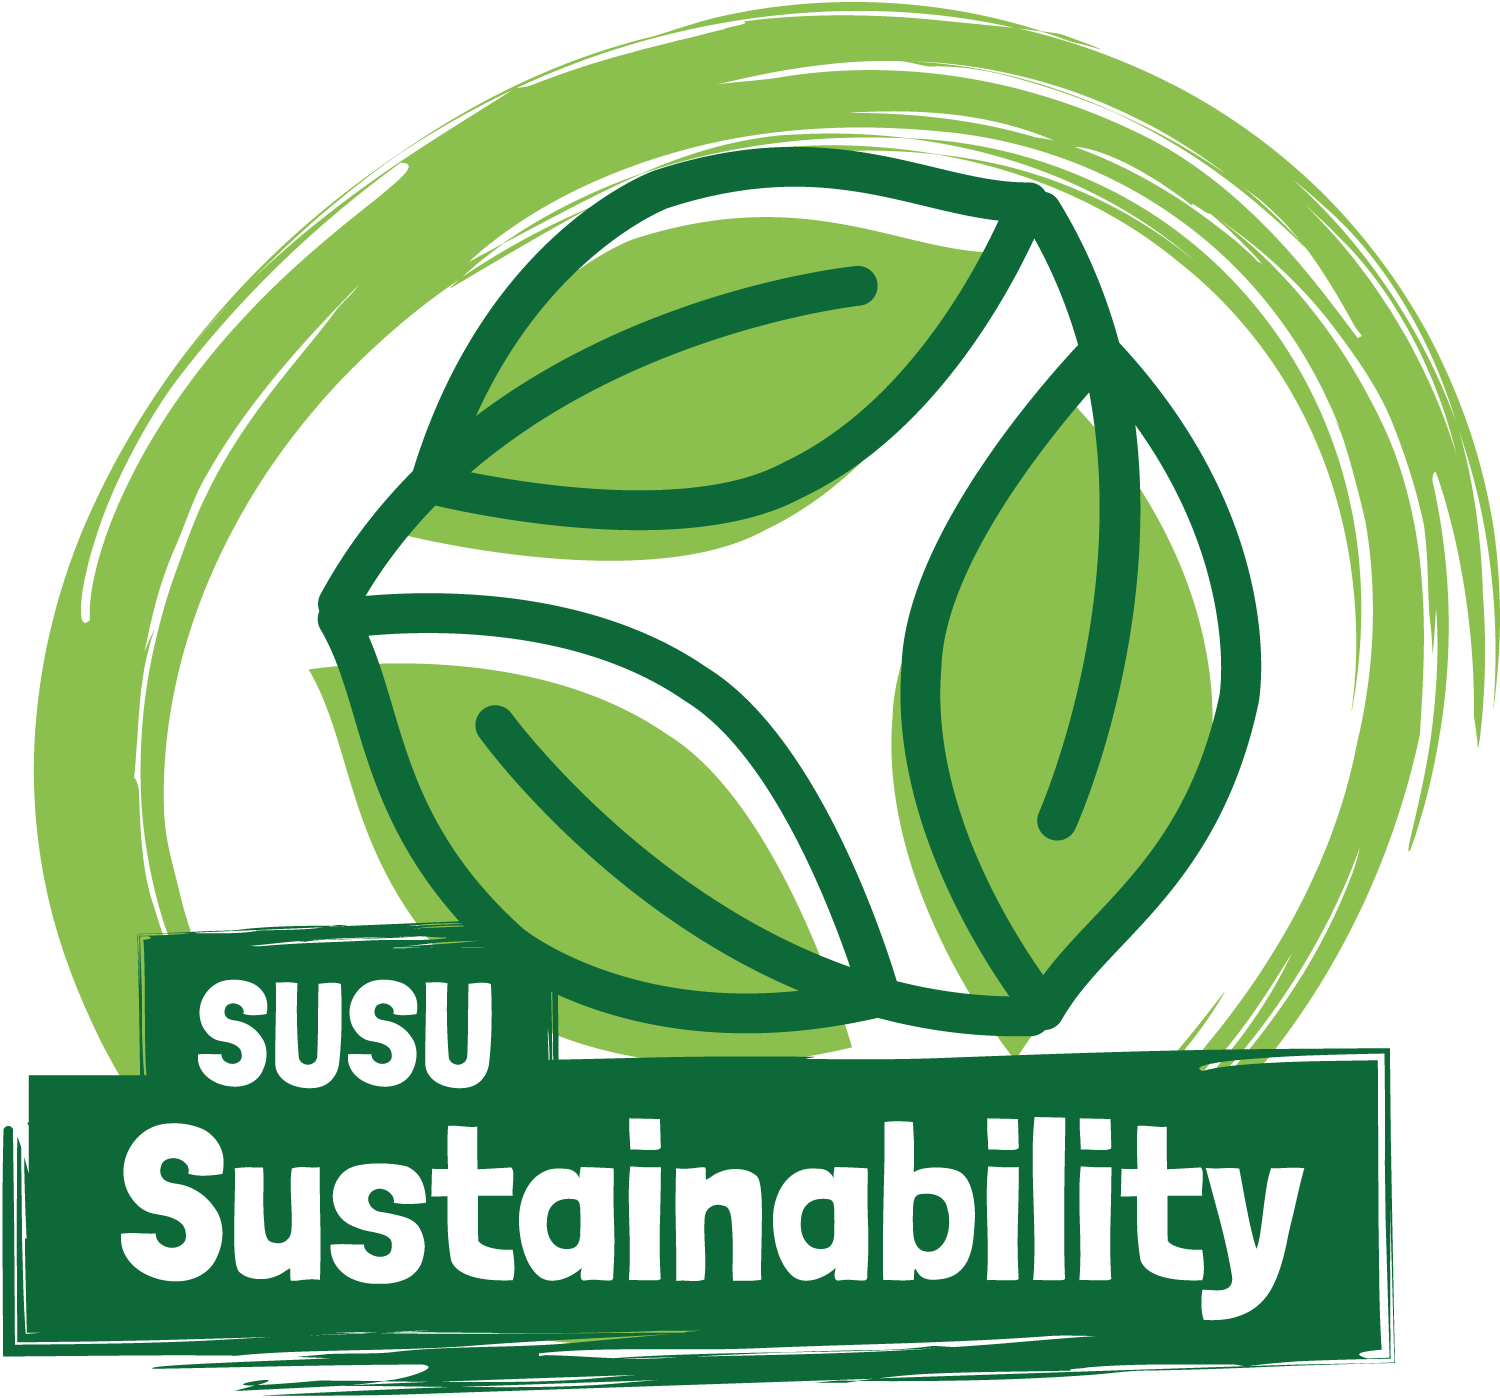 University of Southamptons Students Union sustainability logo.